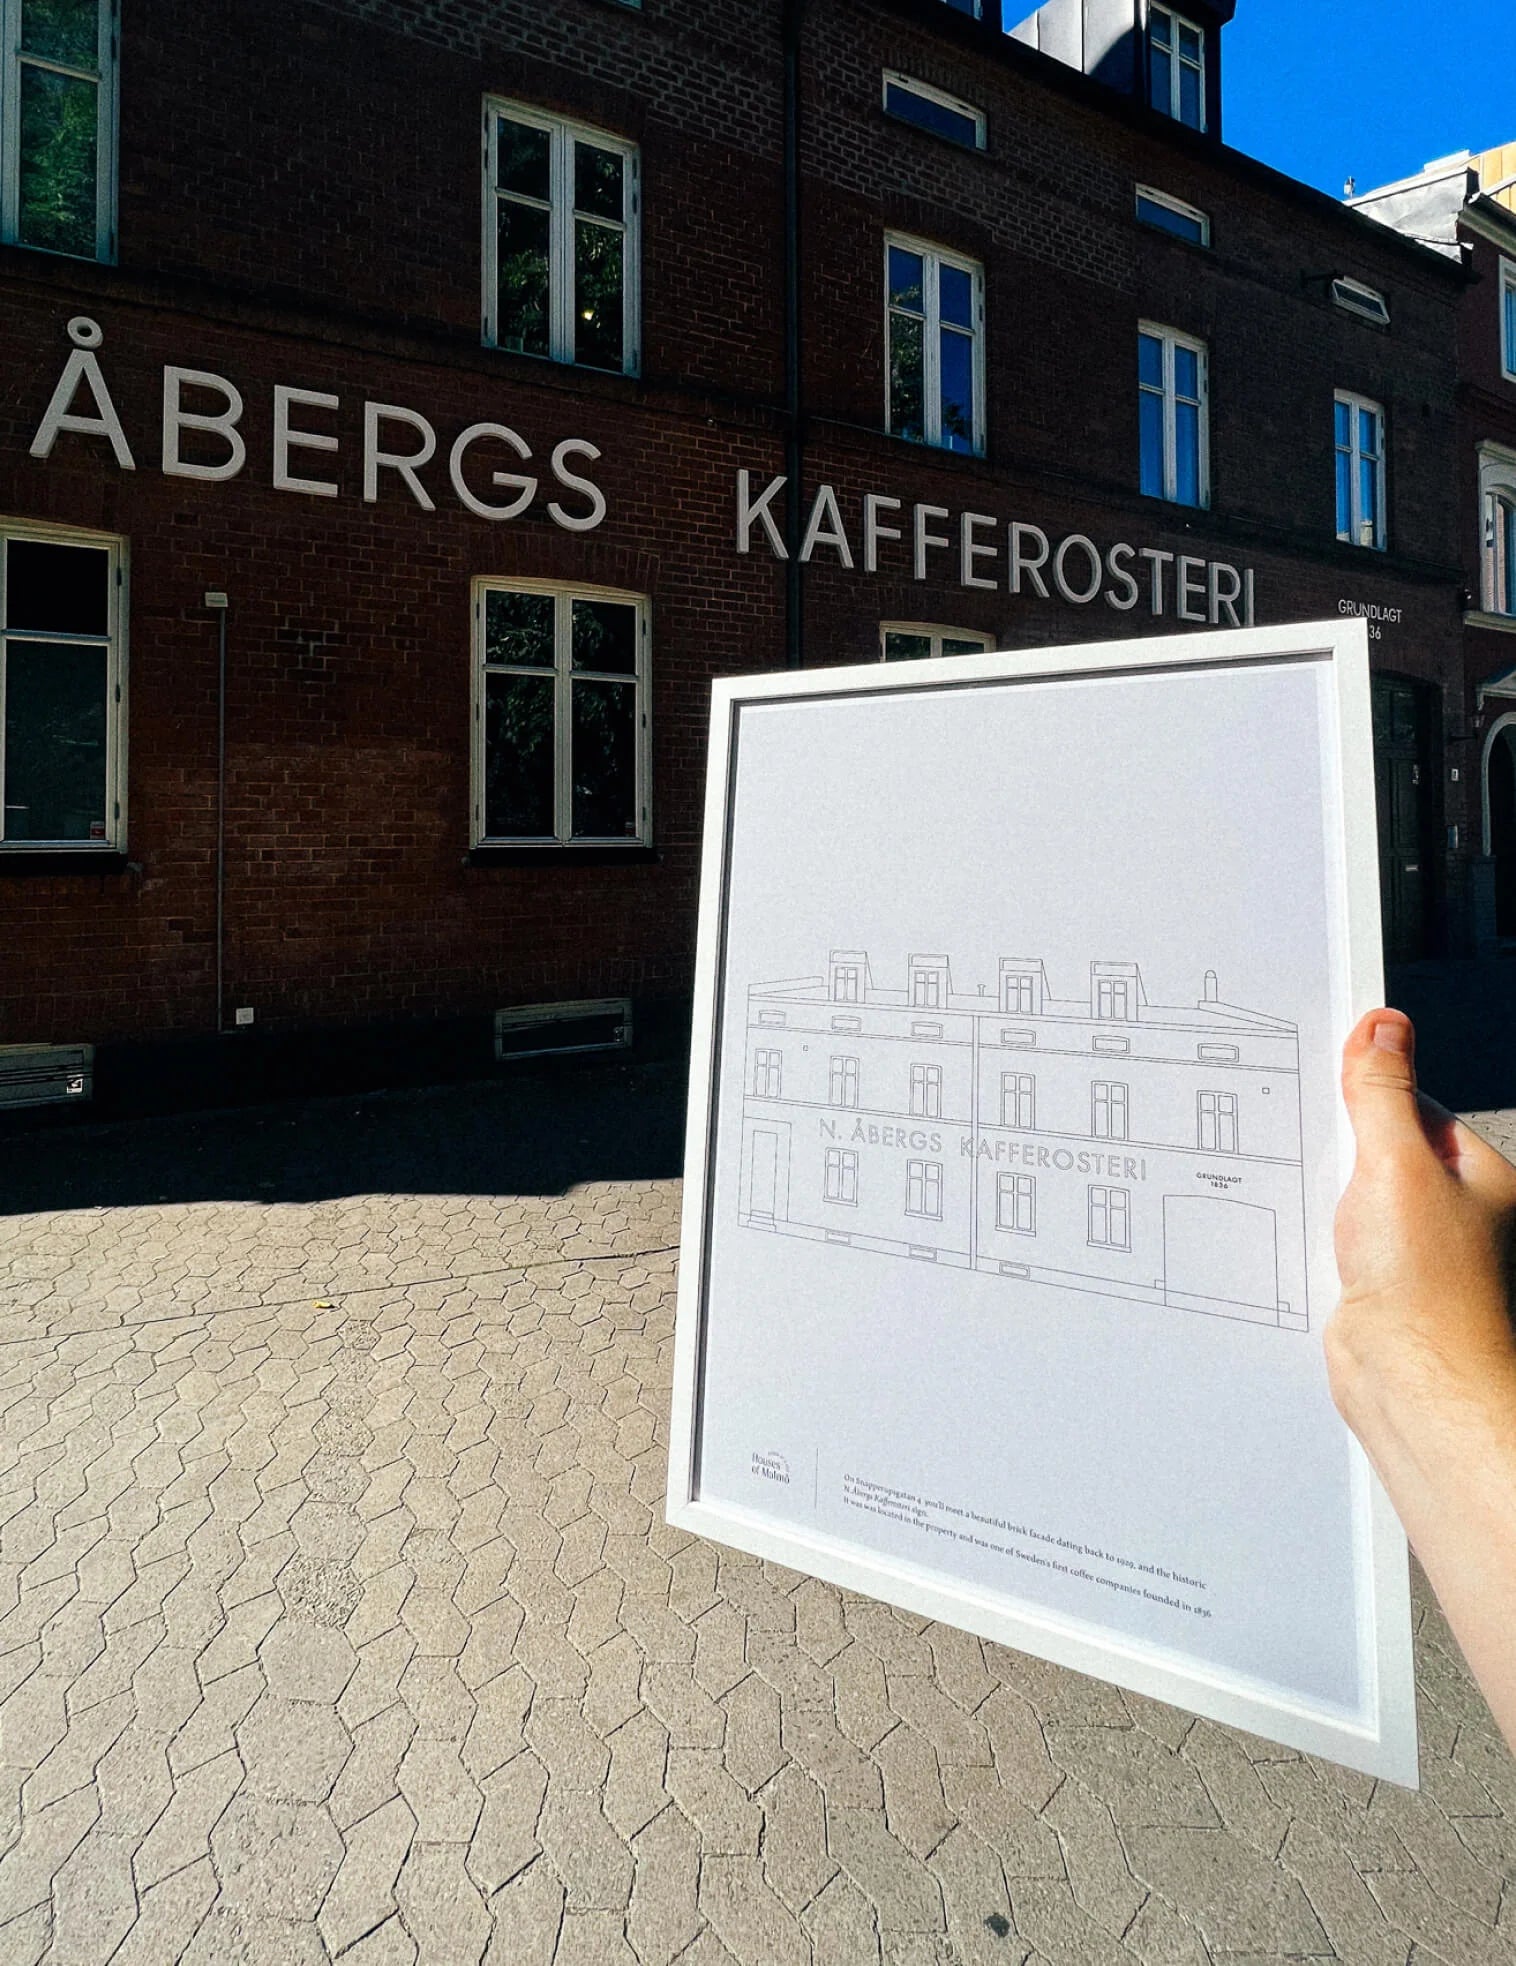 N.Åbergs Kafferosteri